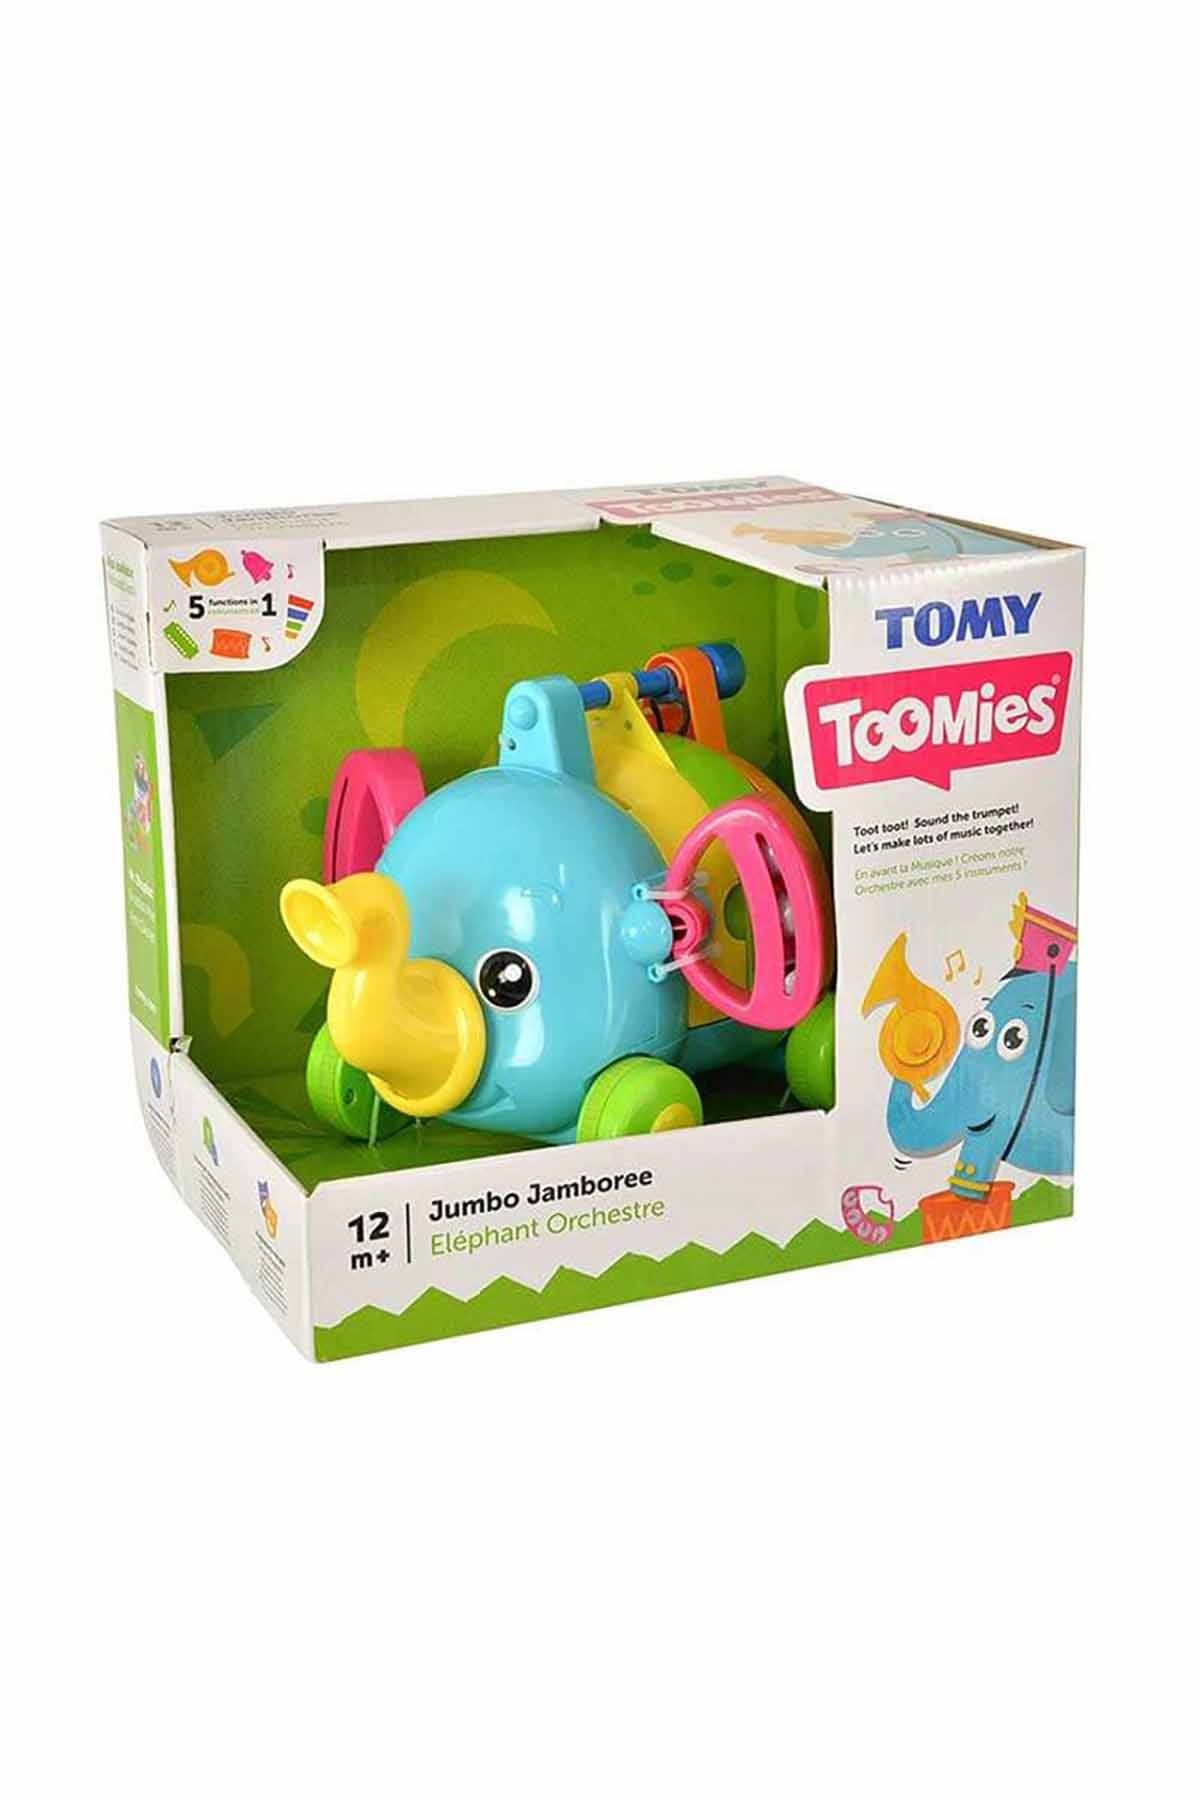 Tomy Toomies Jumbonun Bandosu-72377